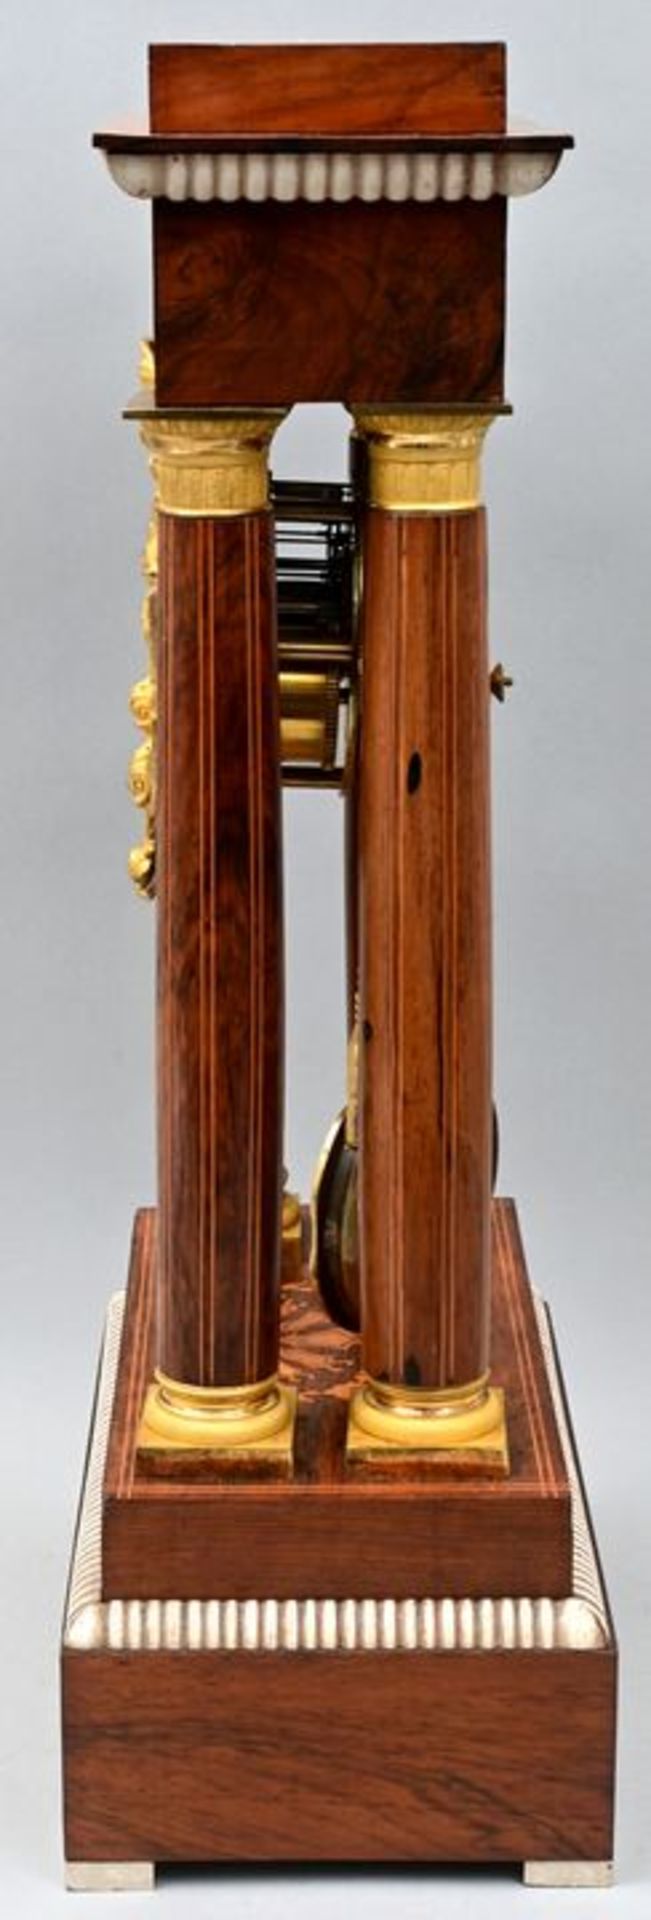 Stutzuhr / Bracket clock - Image 5 of 7